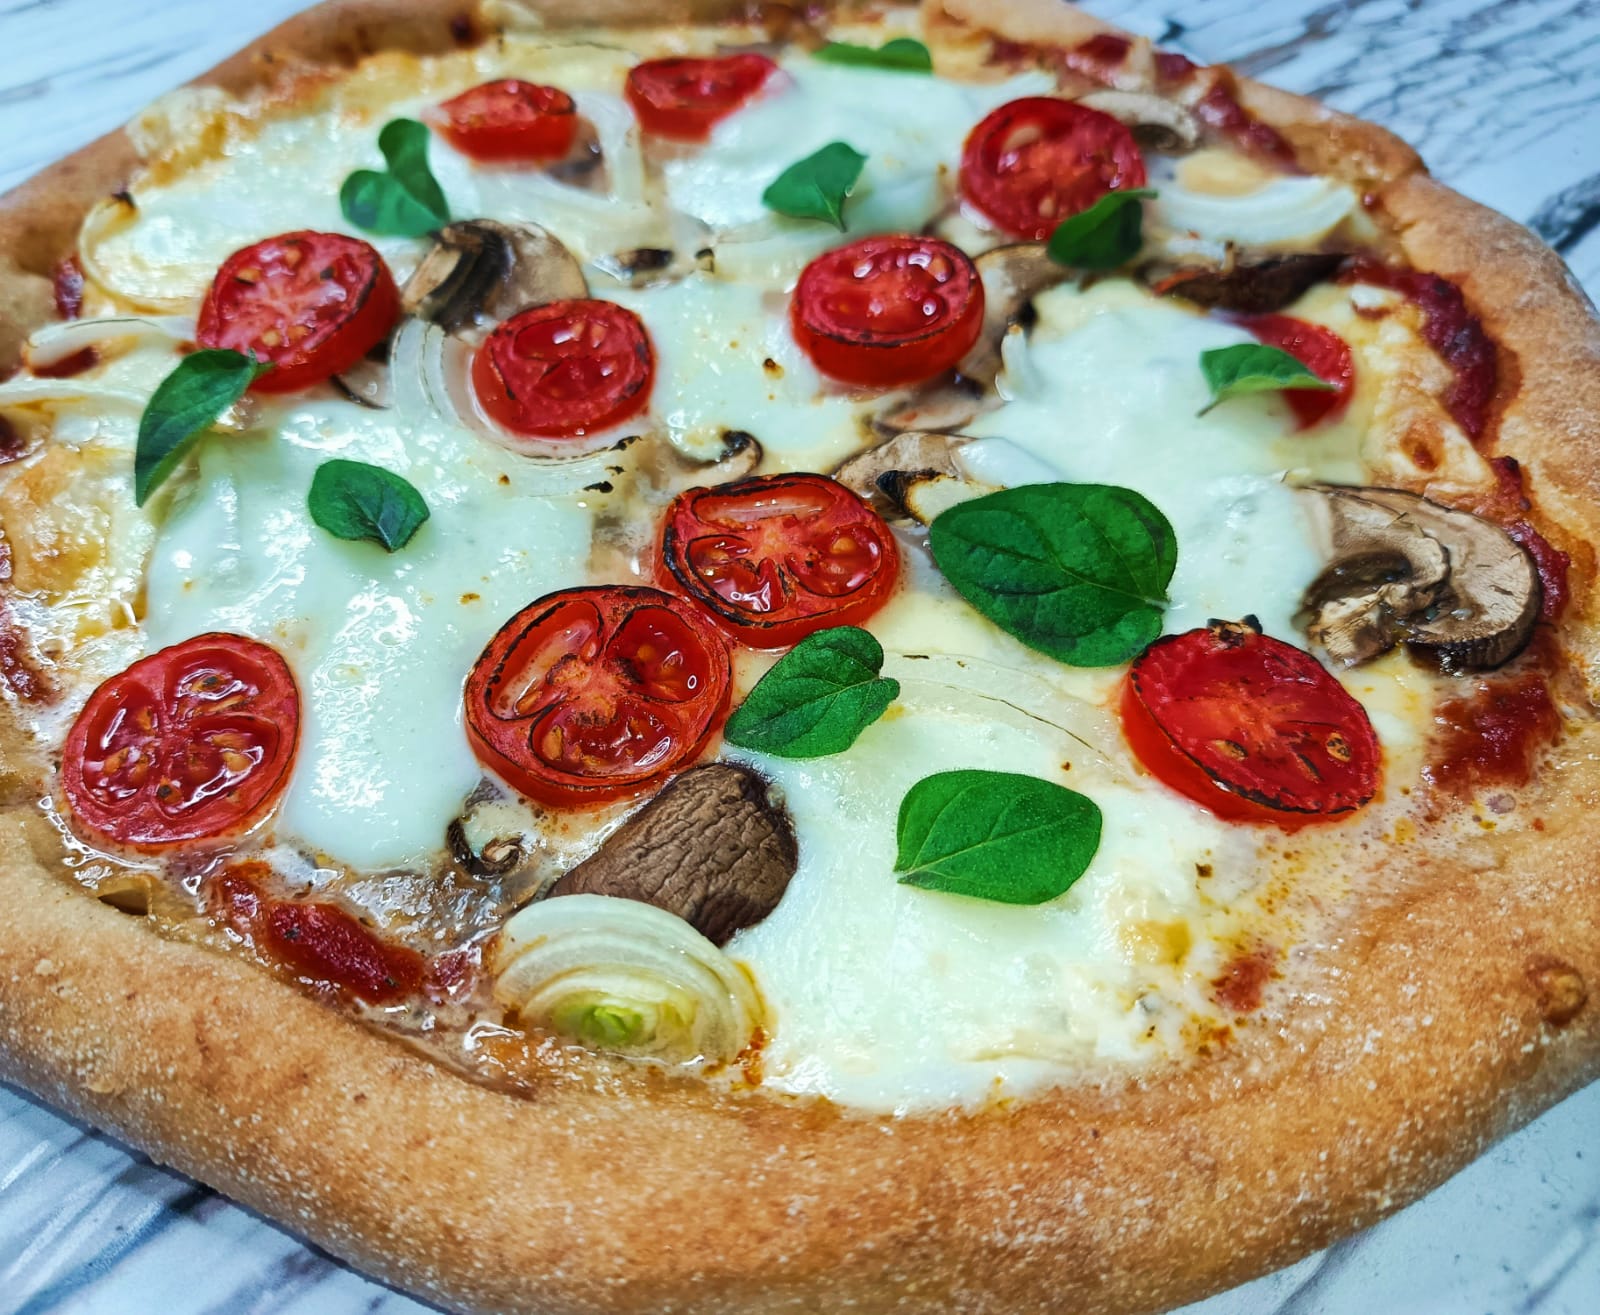 סדנה דיגיטלית להכנת פיצה ללא גלוטן